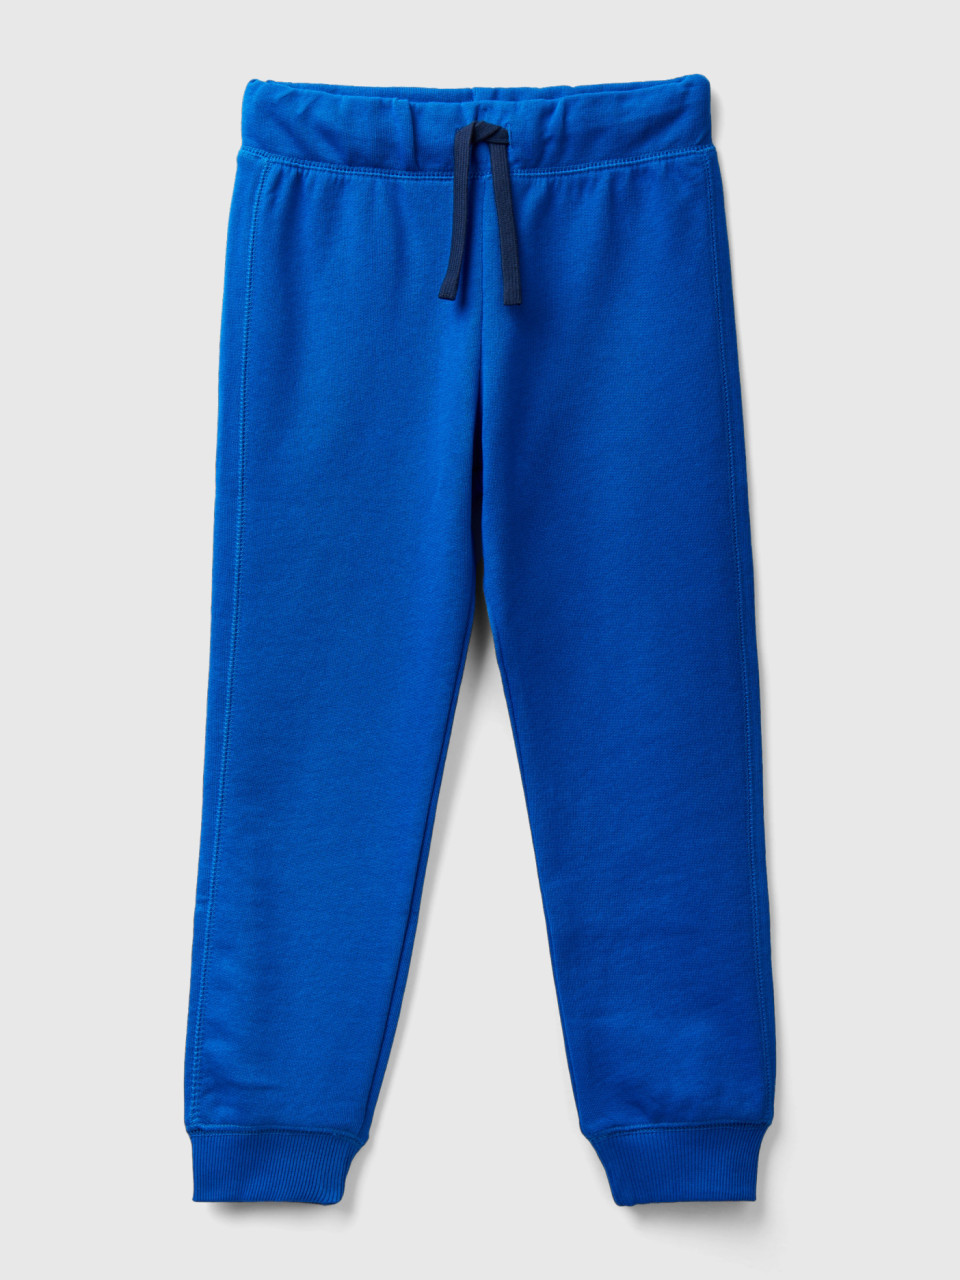 Benetton, 100% Cotton Sweatpants, Bright Blue, Kids